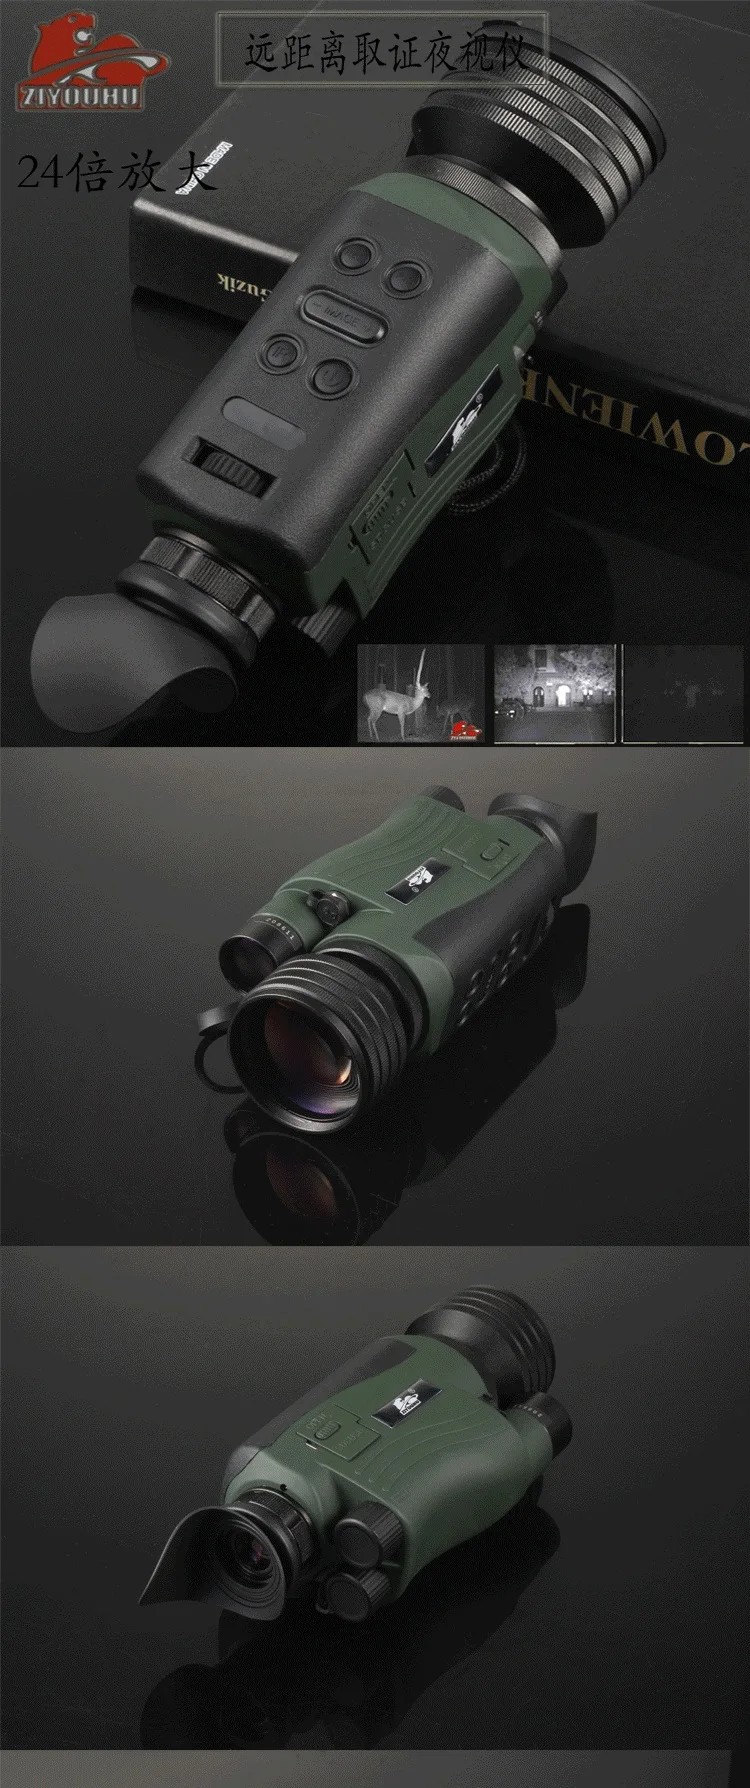 ZIYOUHU телескоп высокой четкости ночного видения мобильный телефон очки ночного видения нетепловое изображение очки ночного видения